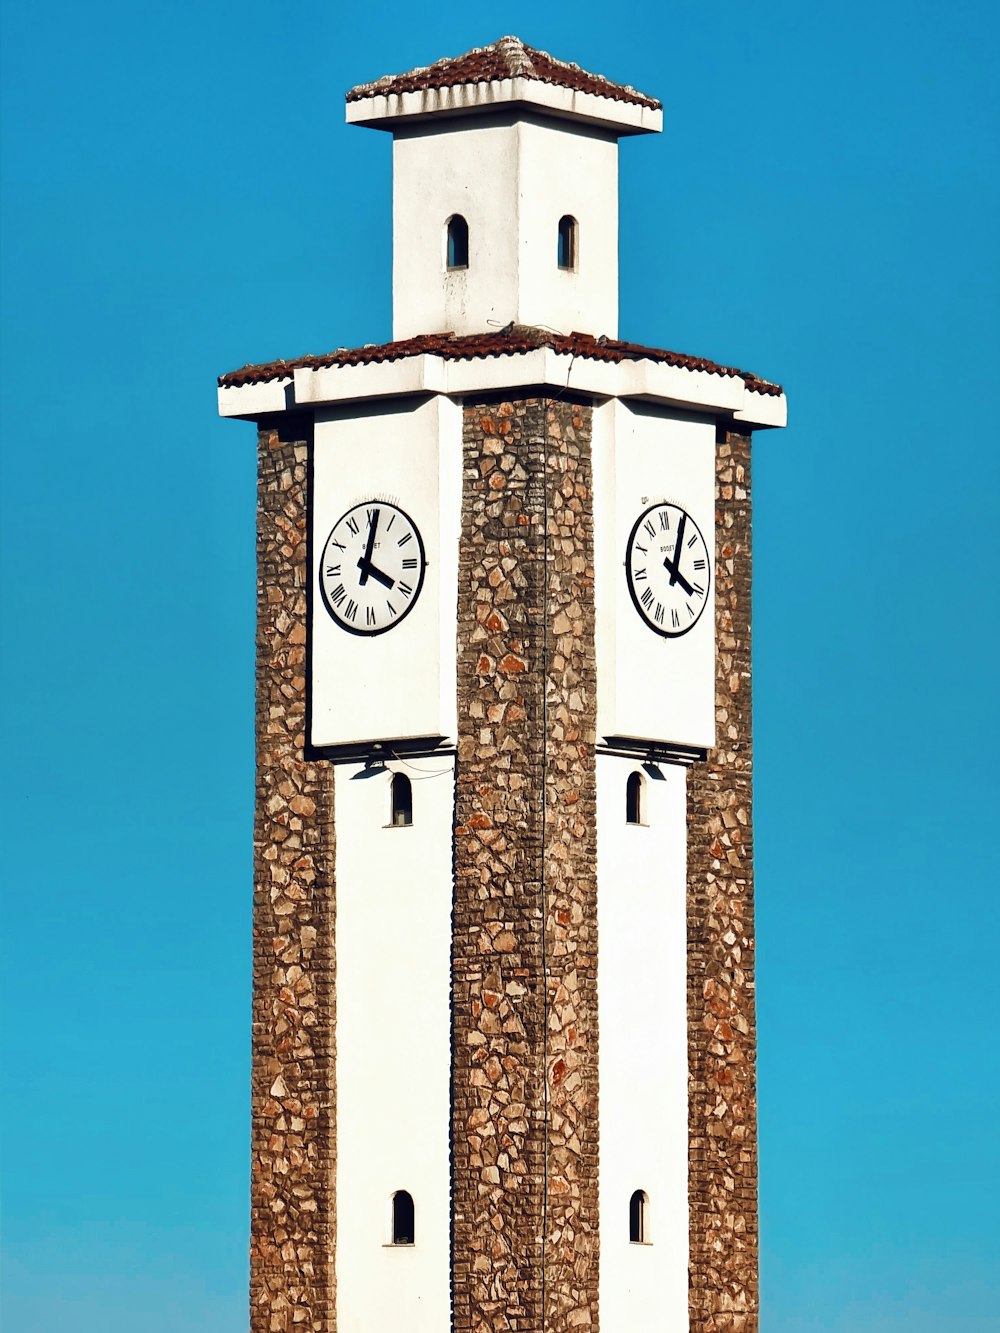 uma torre do relógio alta com dois relógios em cada um dos lados